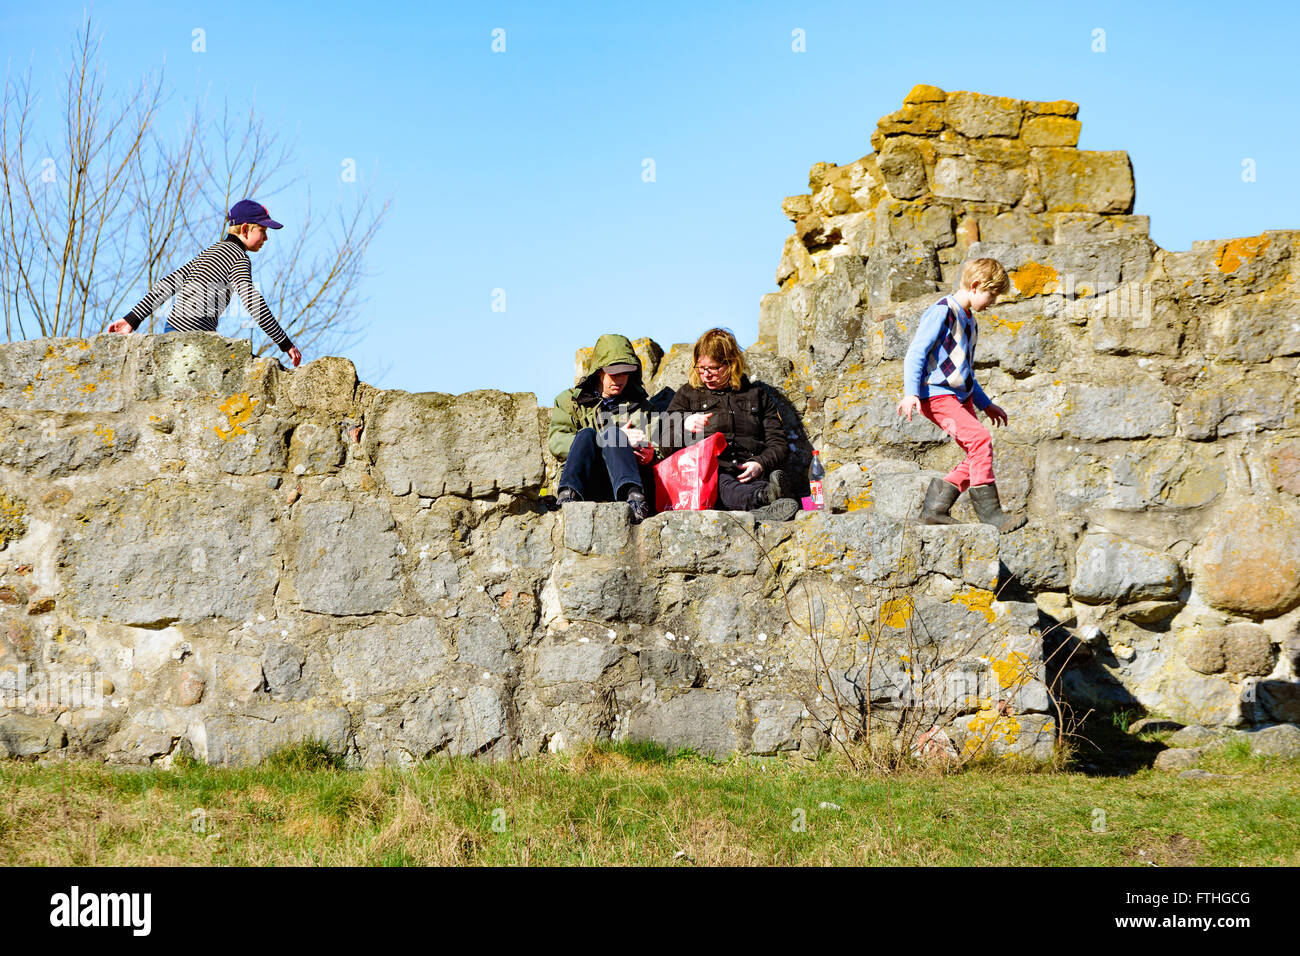 Ahus, Schweden - 20. März 2016: Junge Menschen Ruhe und Spaß in einer steinernen Ruine. Zwei Erwachsene sitzen und unterhalten sich zwei Kinder laufen ein Stockfoto